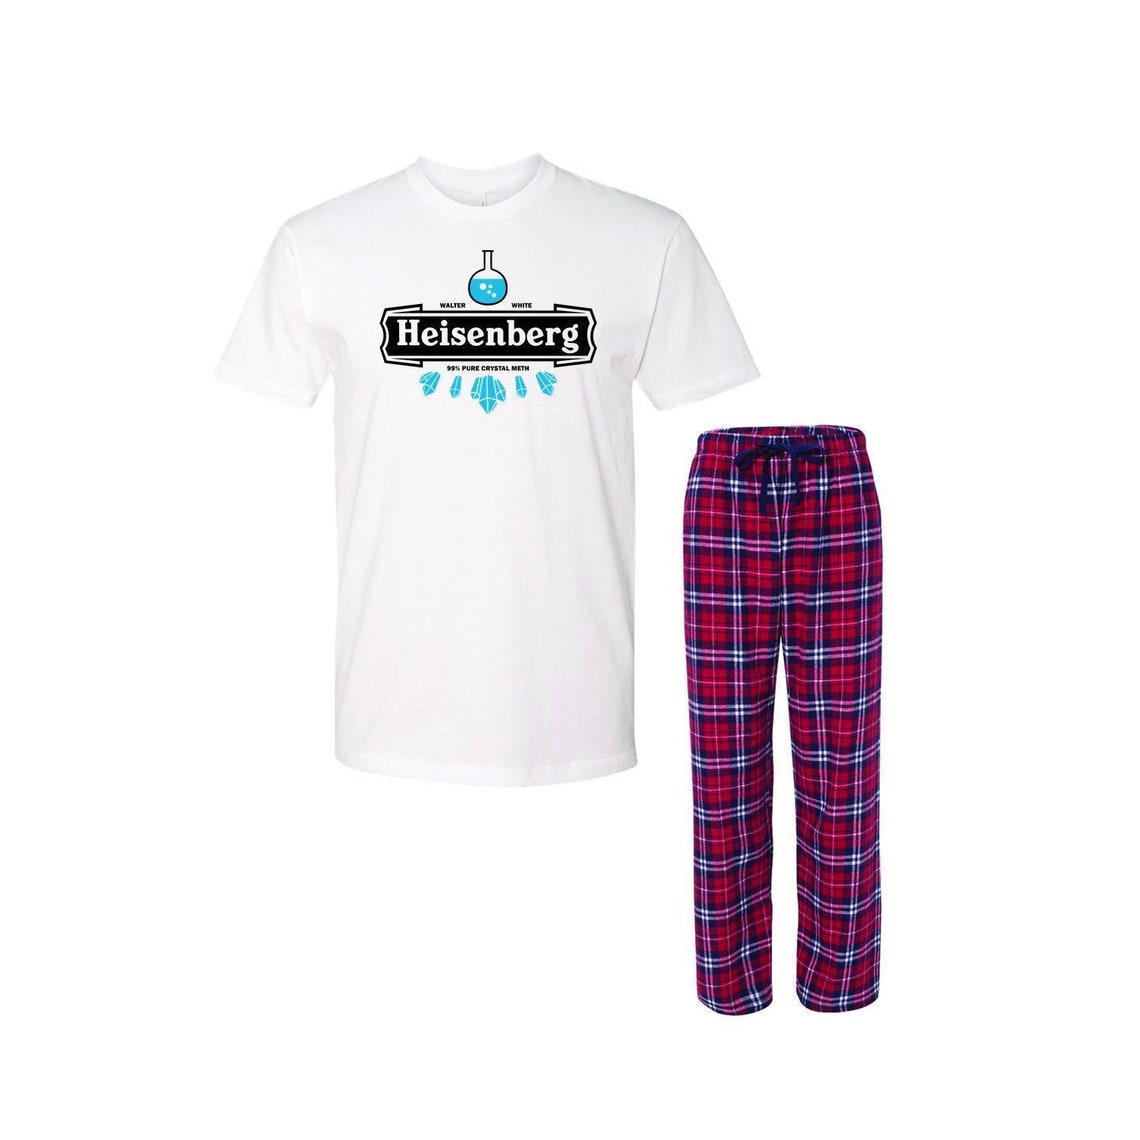 Heisenberg 99% Pure Crewneck Tee Pajamas Breaking Bad Pjs | Etsy